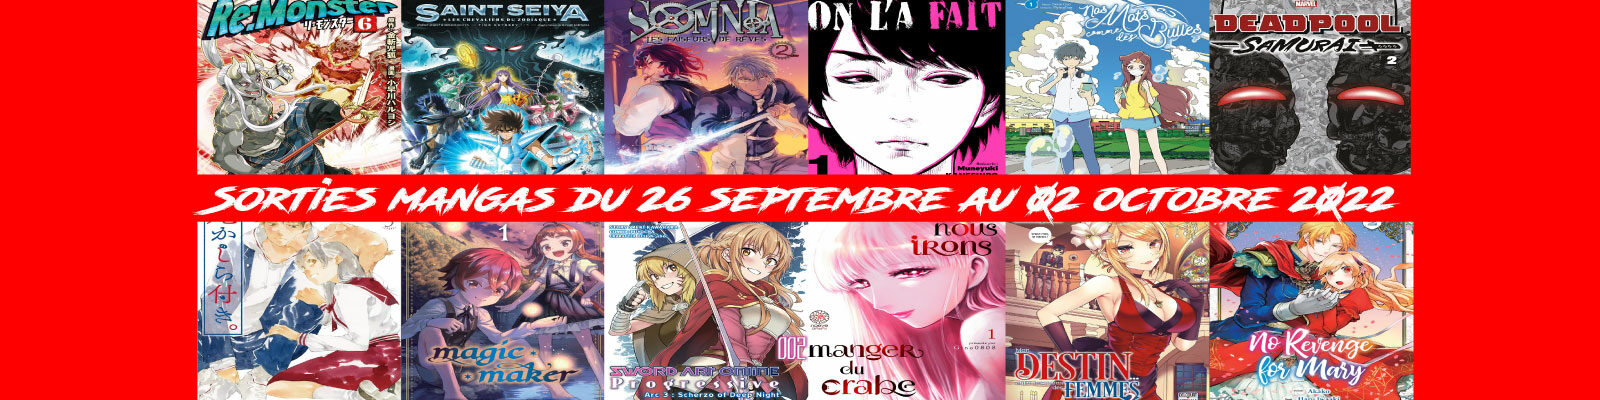 sorties mangas-du-26-septembre-au-02-octobre-2022-2